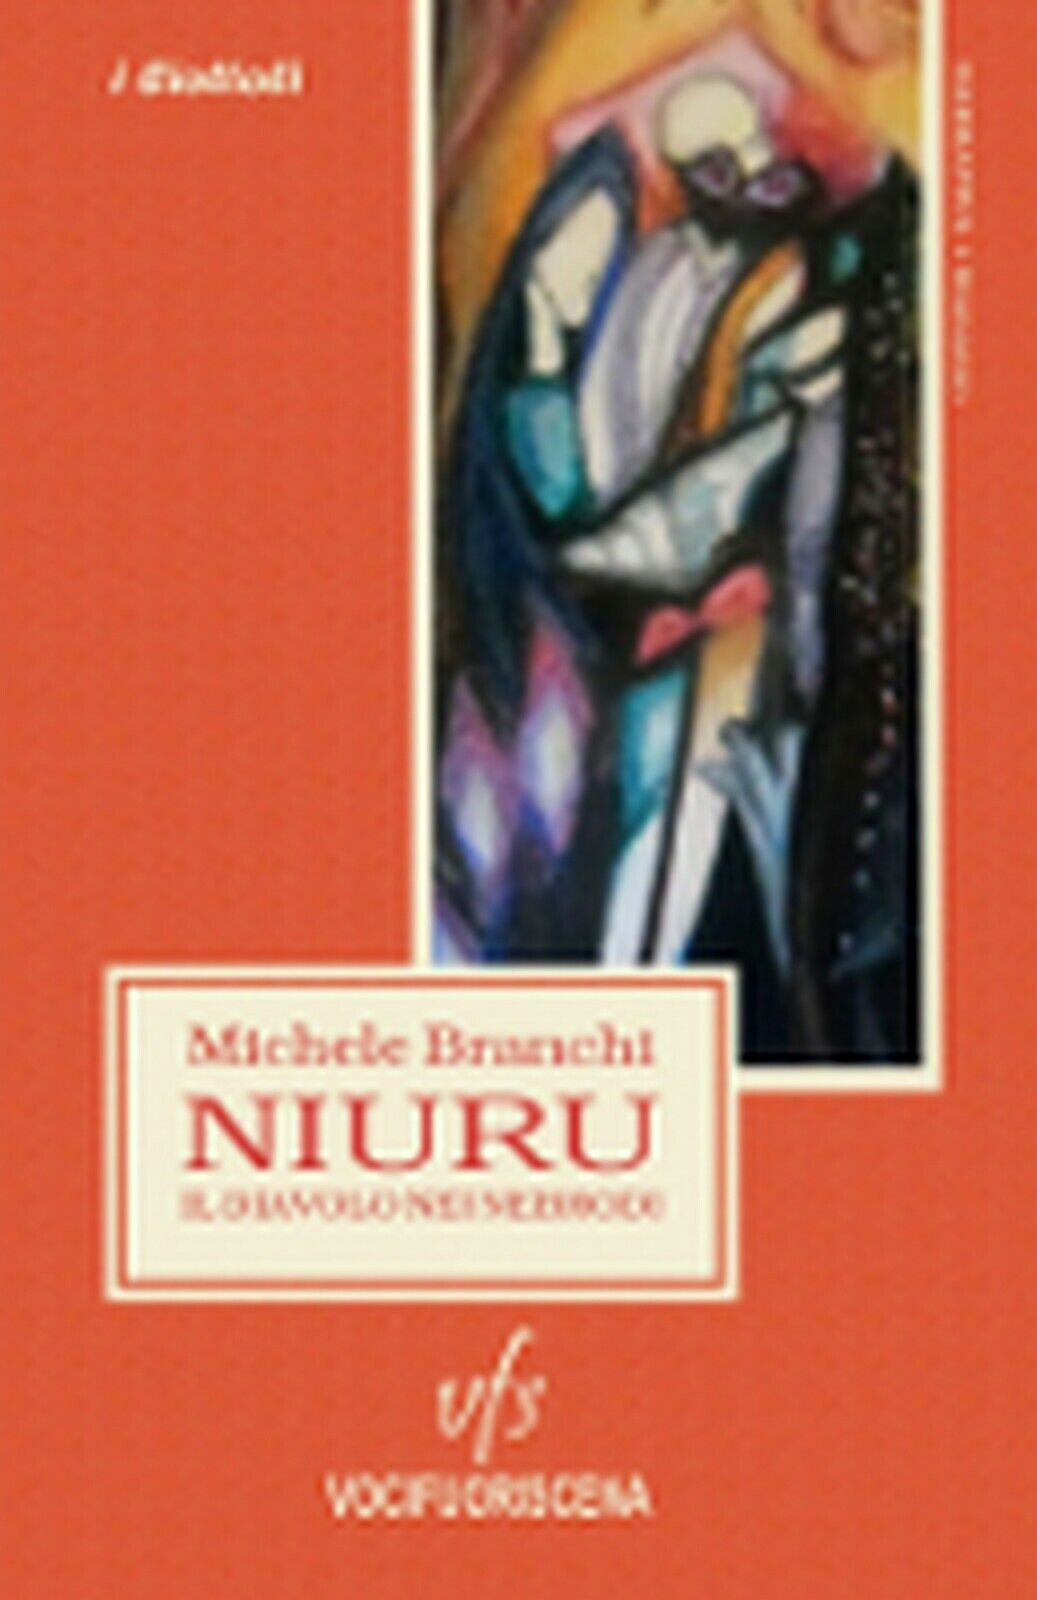 NIURU, IL DIAVOLO NEI NEBRODI  di Michele Branchi,  2018,  Vocifuoriscena libro usato